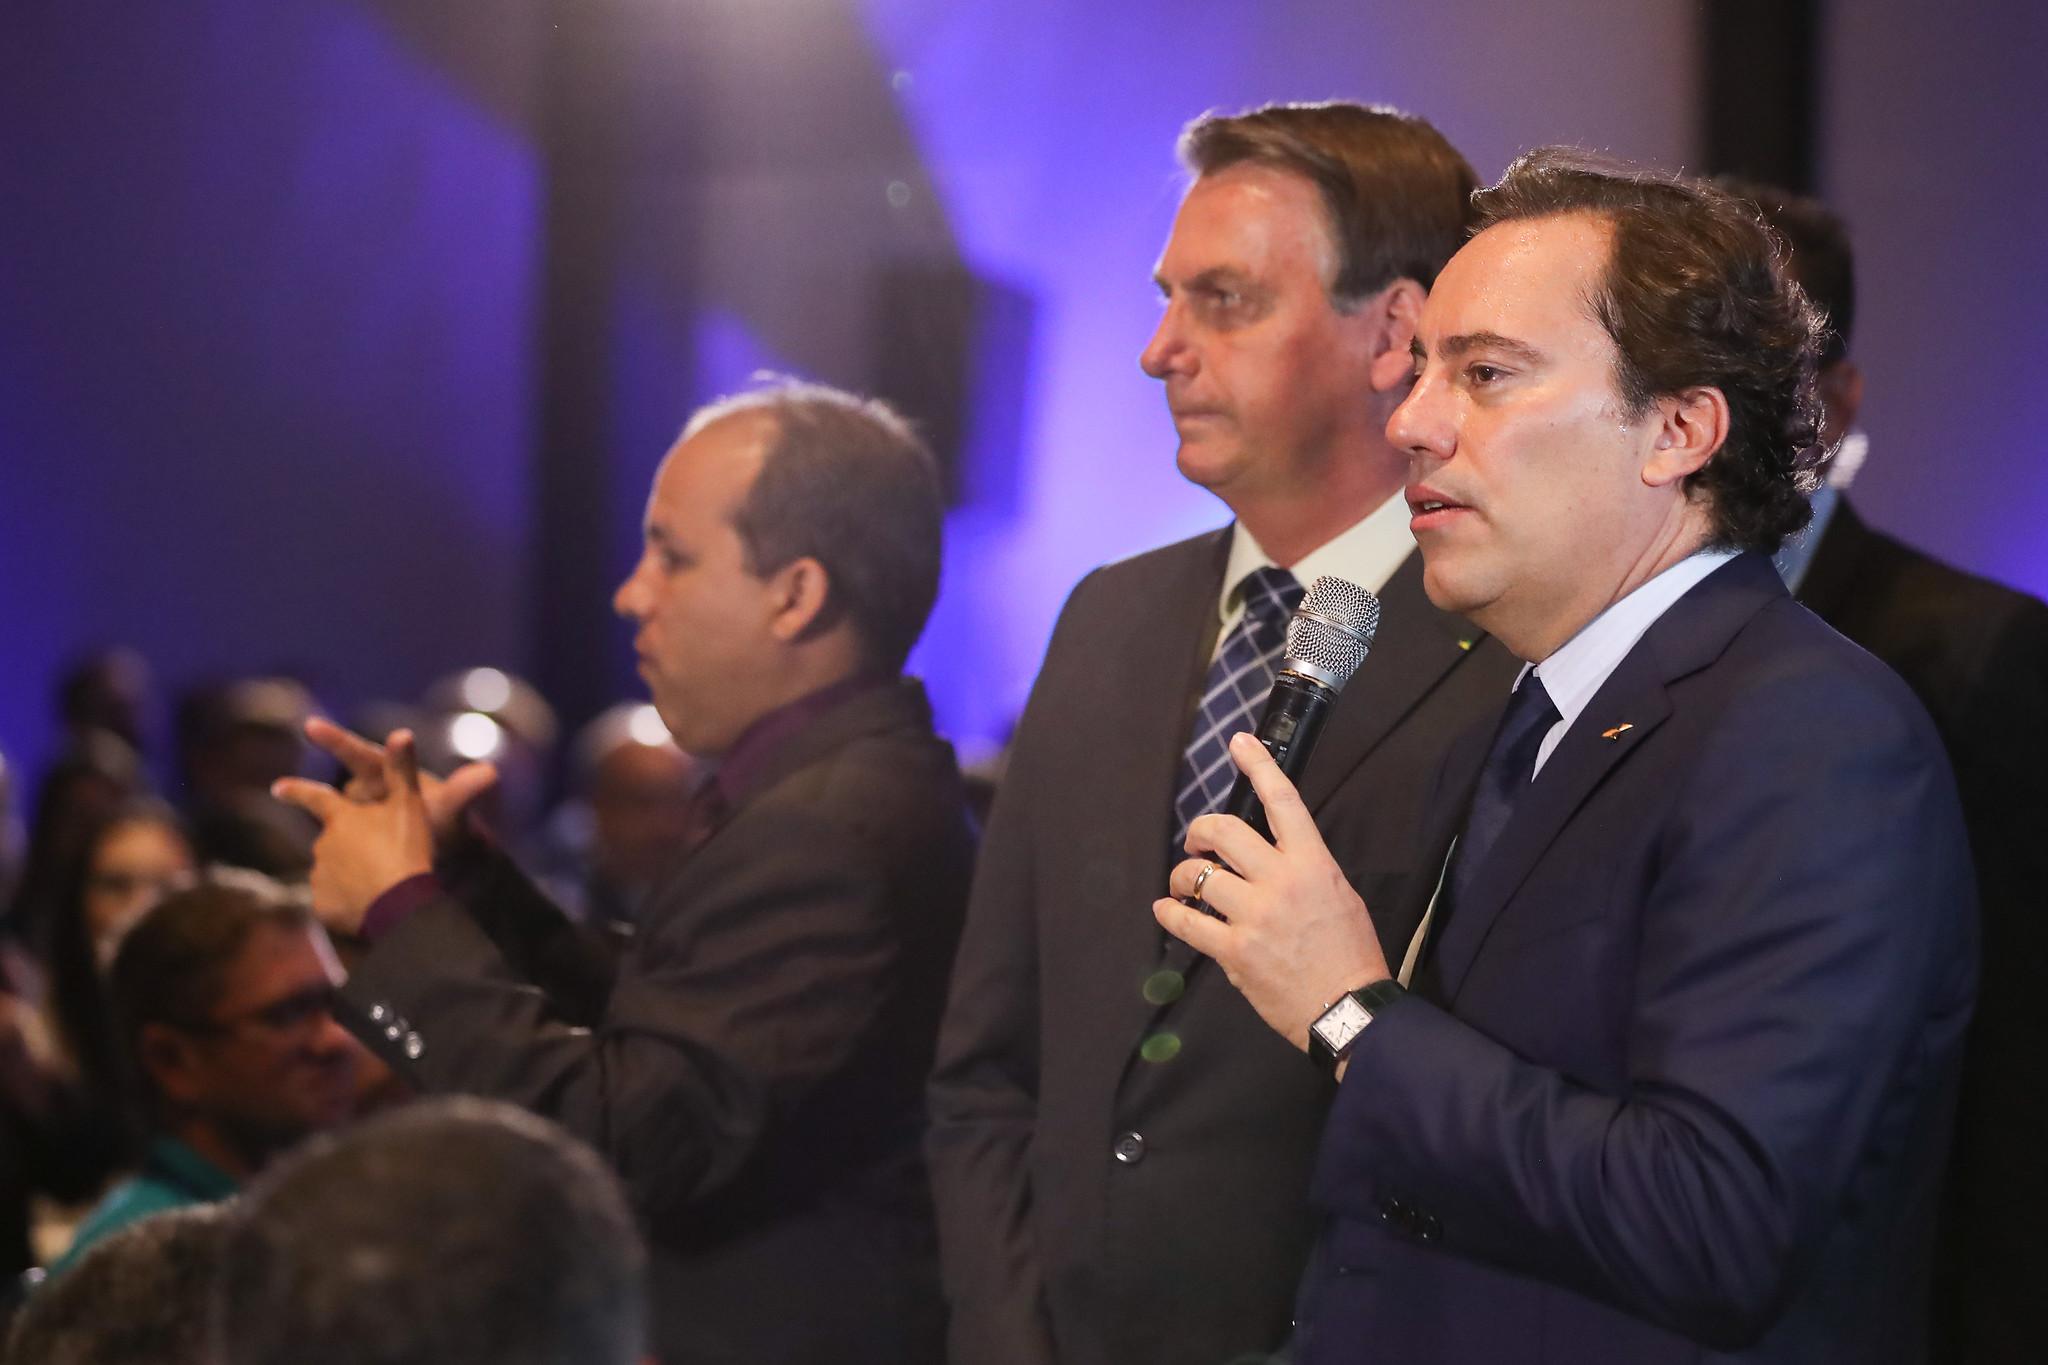 Palavras do Presidente da CAIXA, Pedro Duarte Guimarães, no Distrito Federal, ao lado do Presidente Bolsonaro